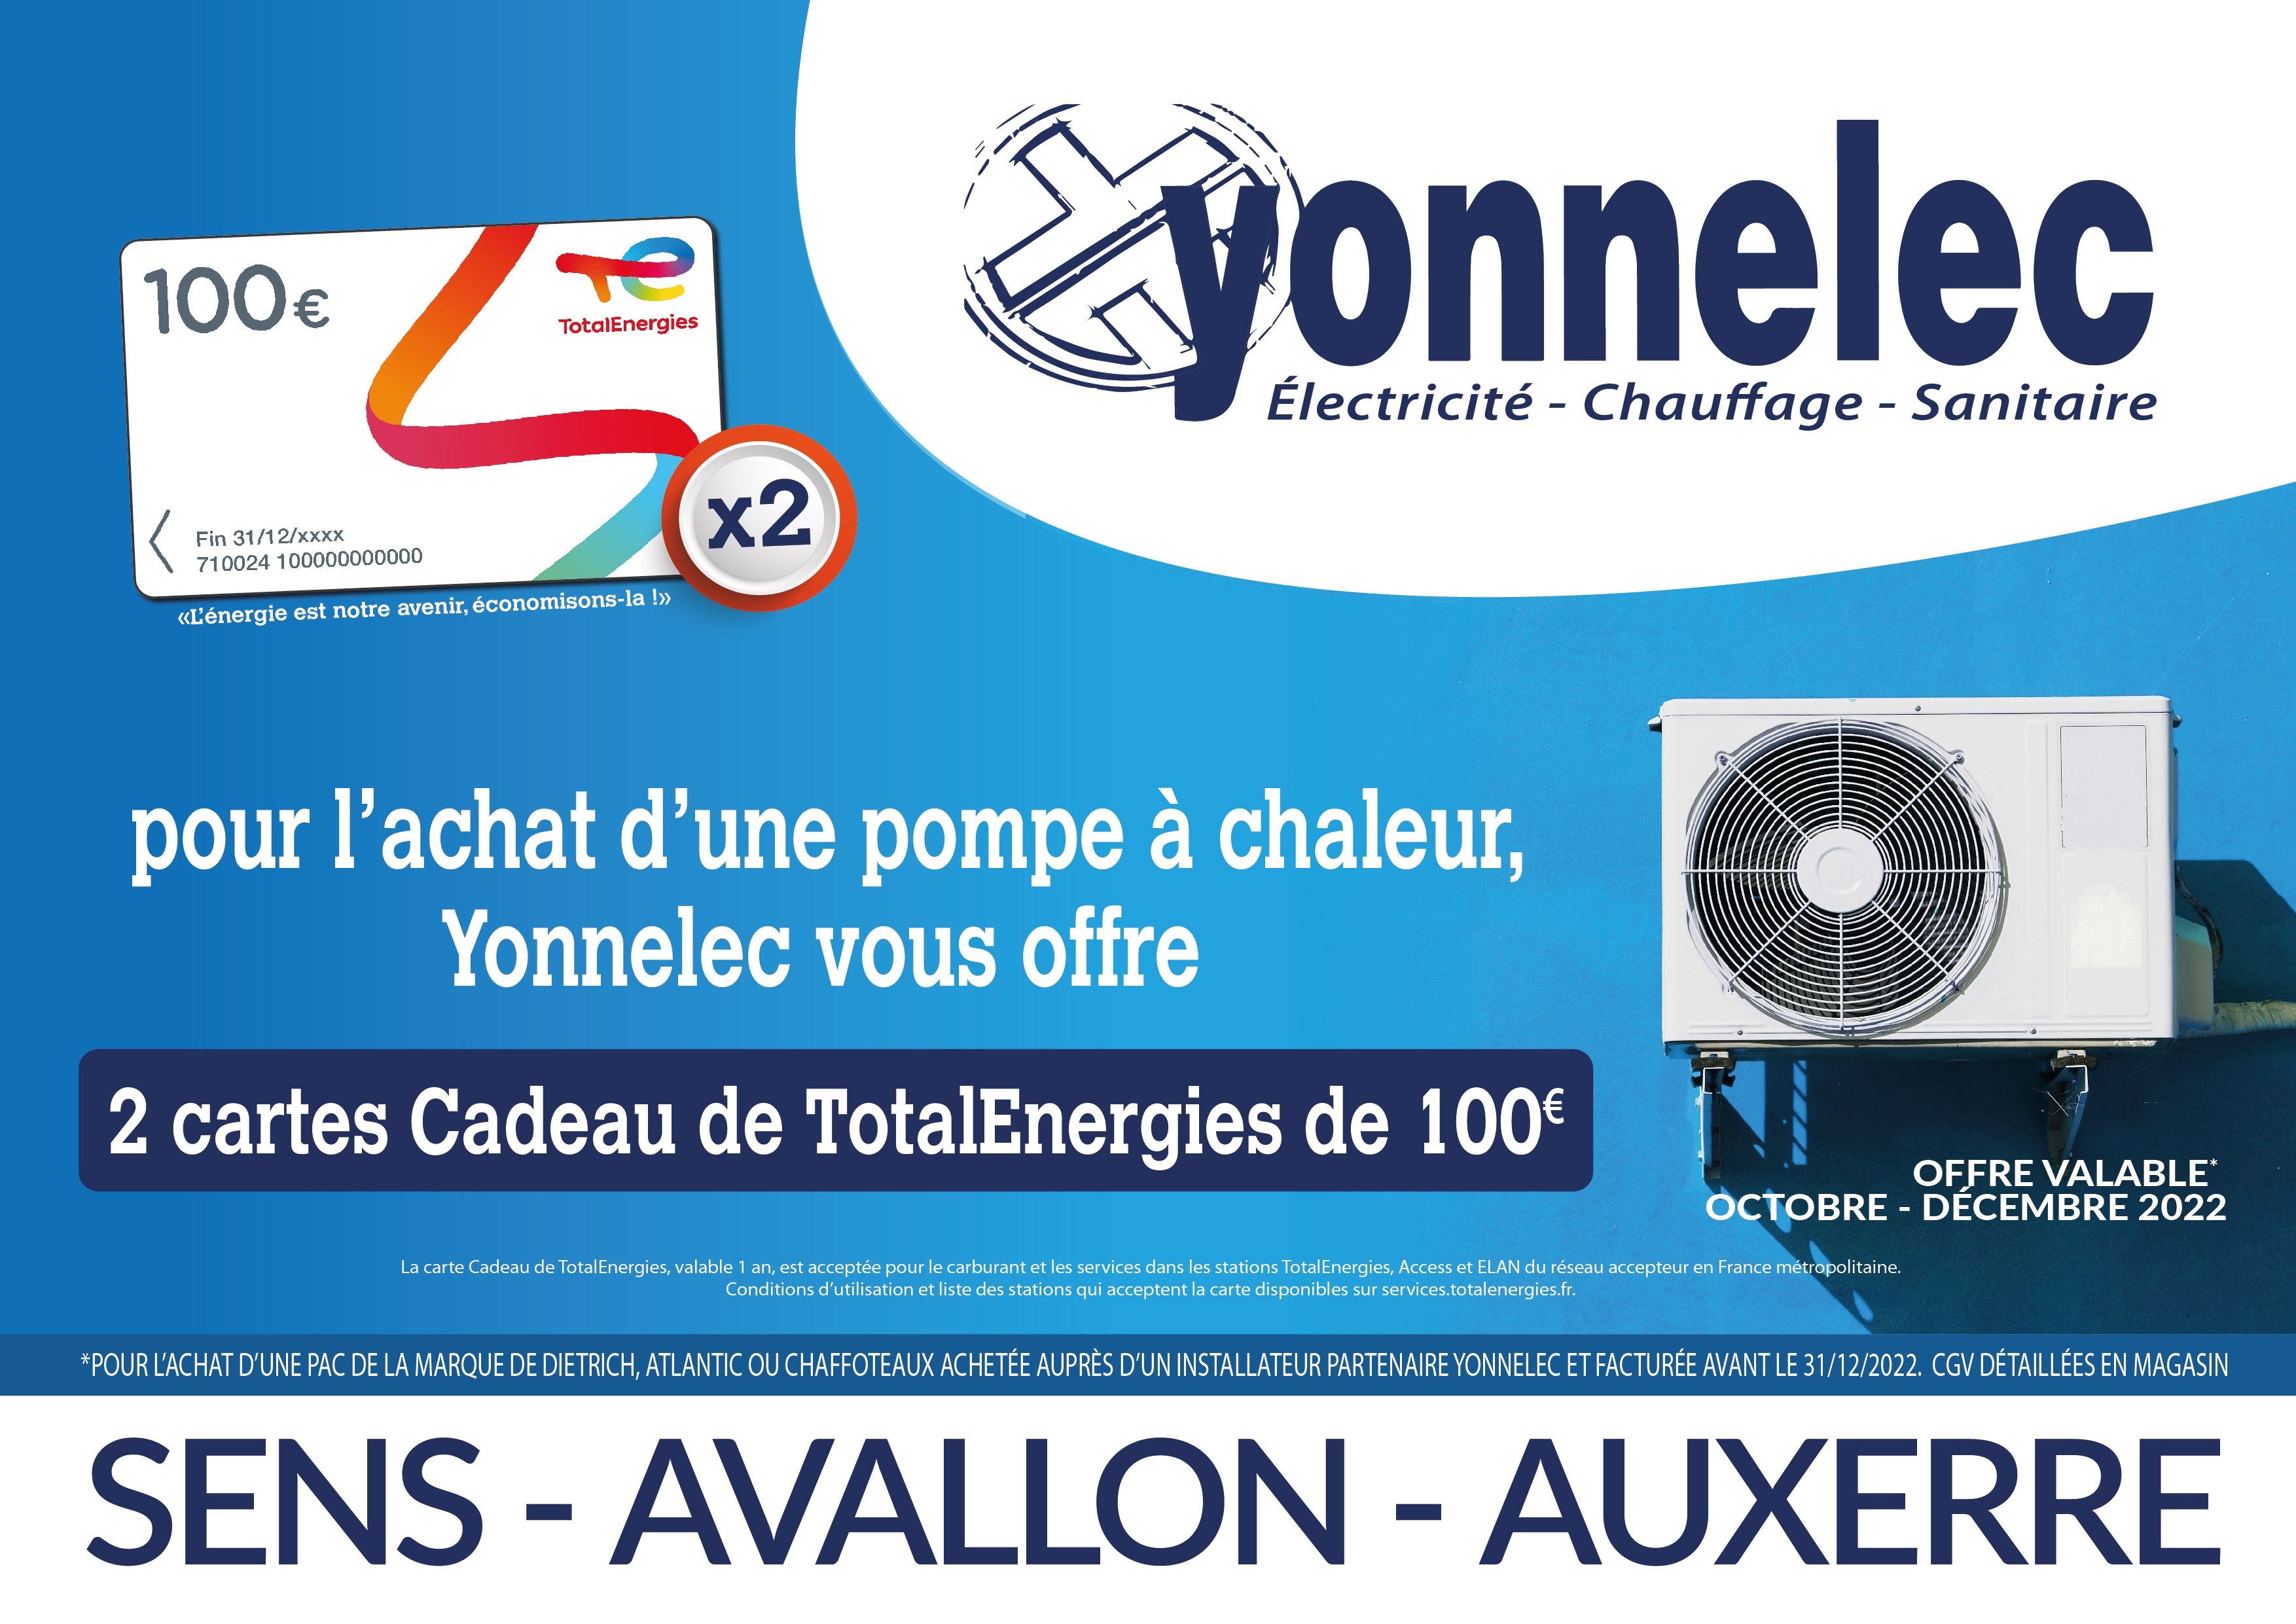 Pour l'achat d'une pompe à chaleur, yonnelec vous offre 2 cartes cadeau TotalEnergies de 100 €